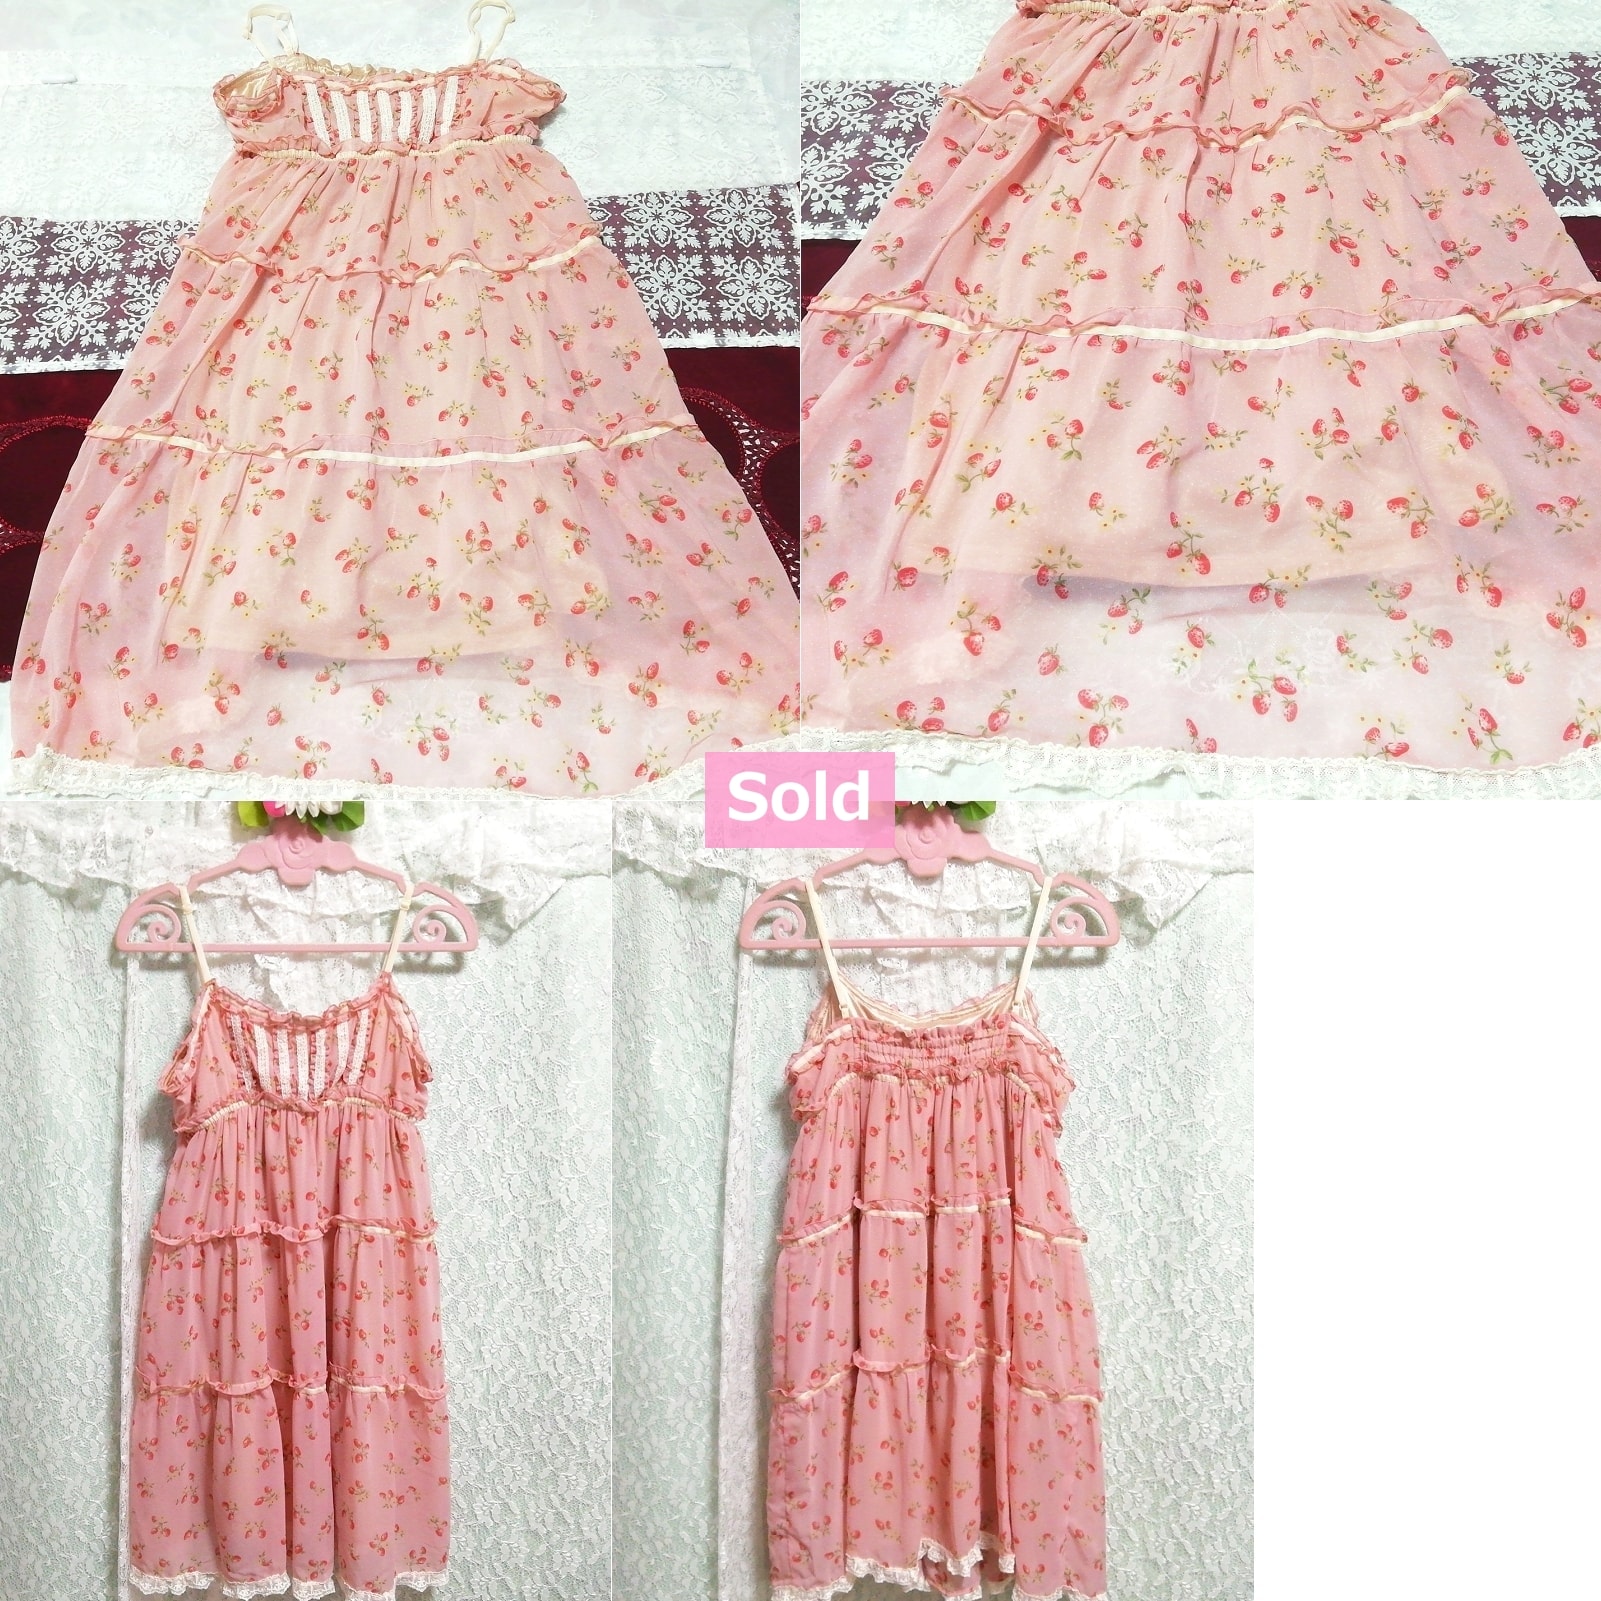 粉色樱桃图案白色蕾丝雪纺睡袍吊带背心连衣裙, 时尚, 女士时装, 吊带背心